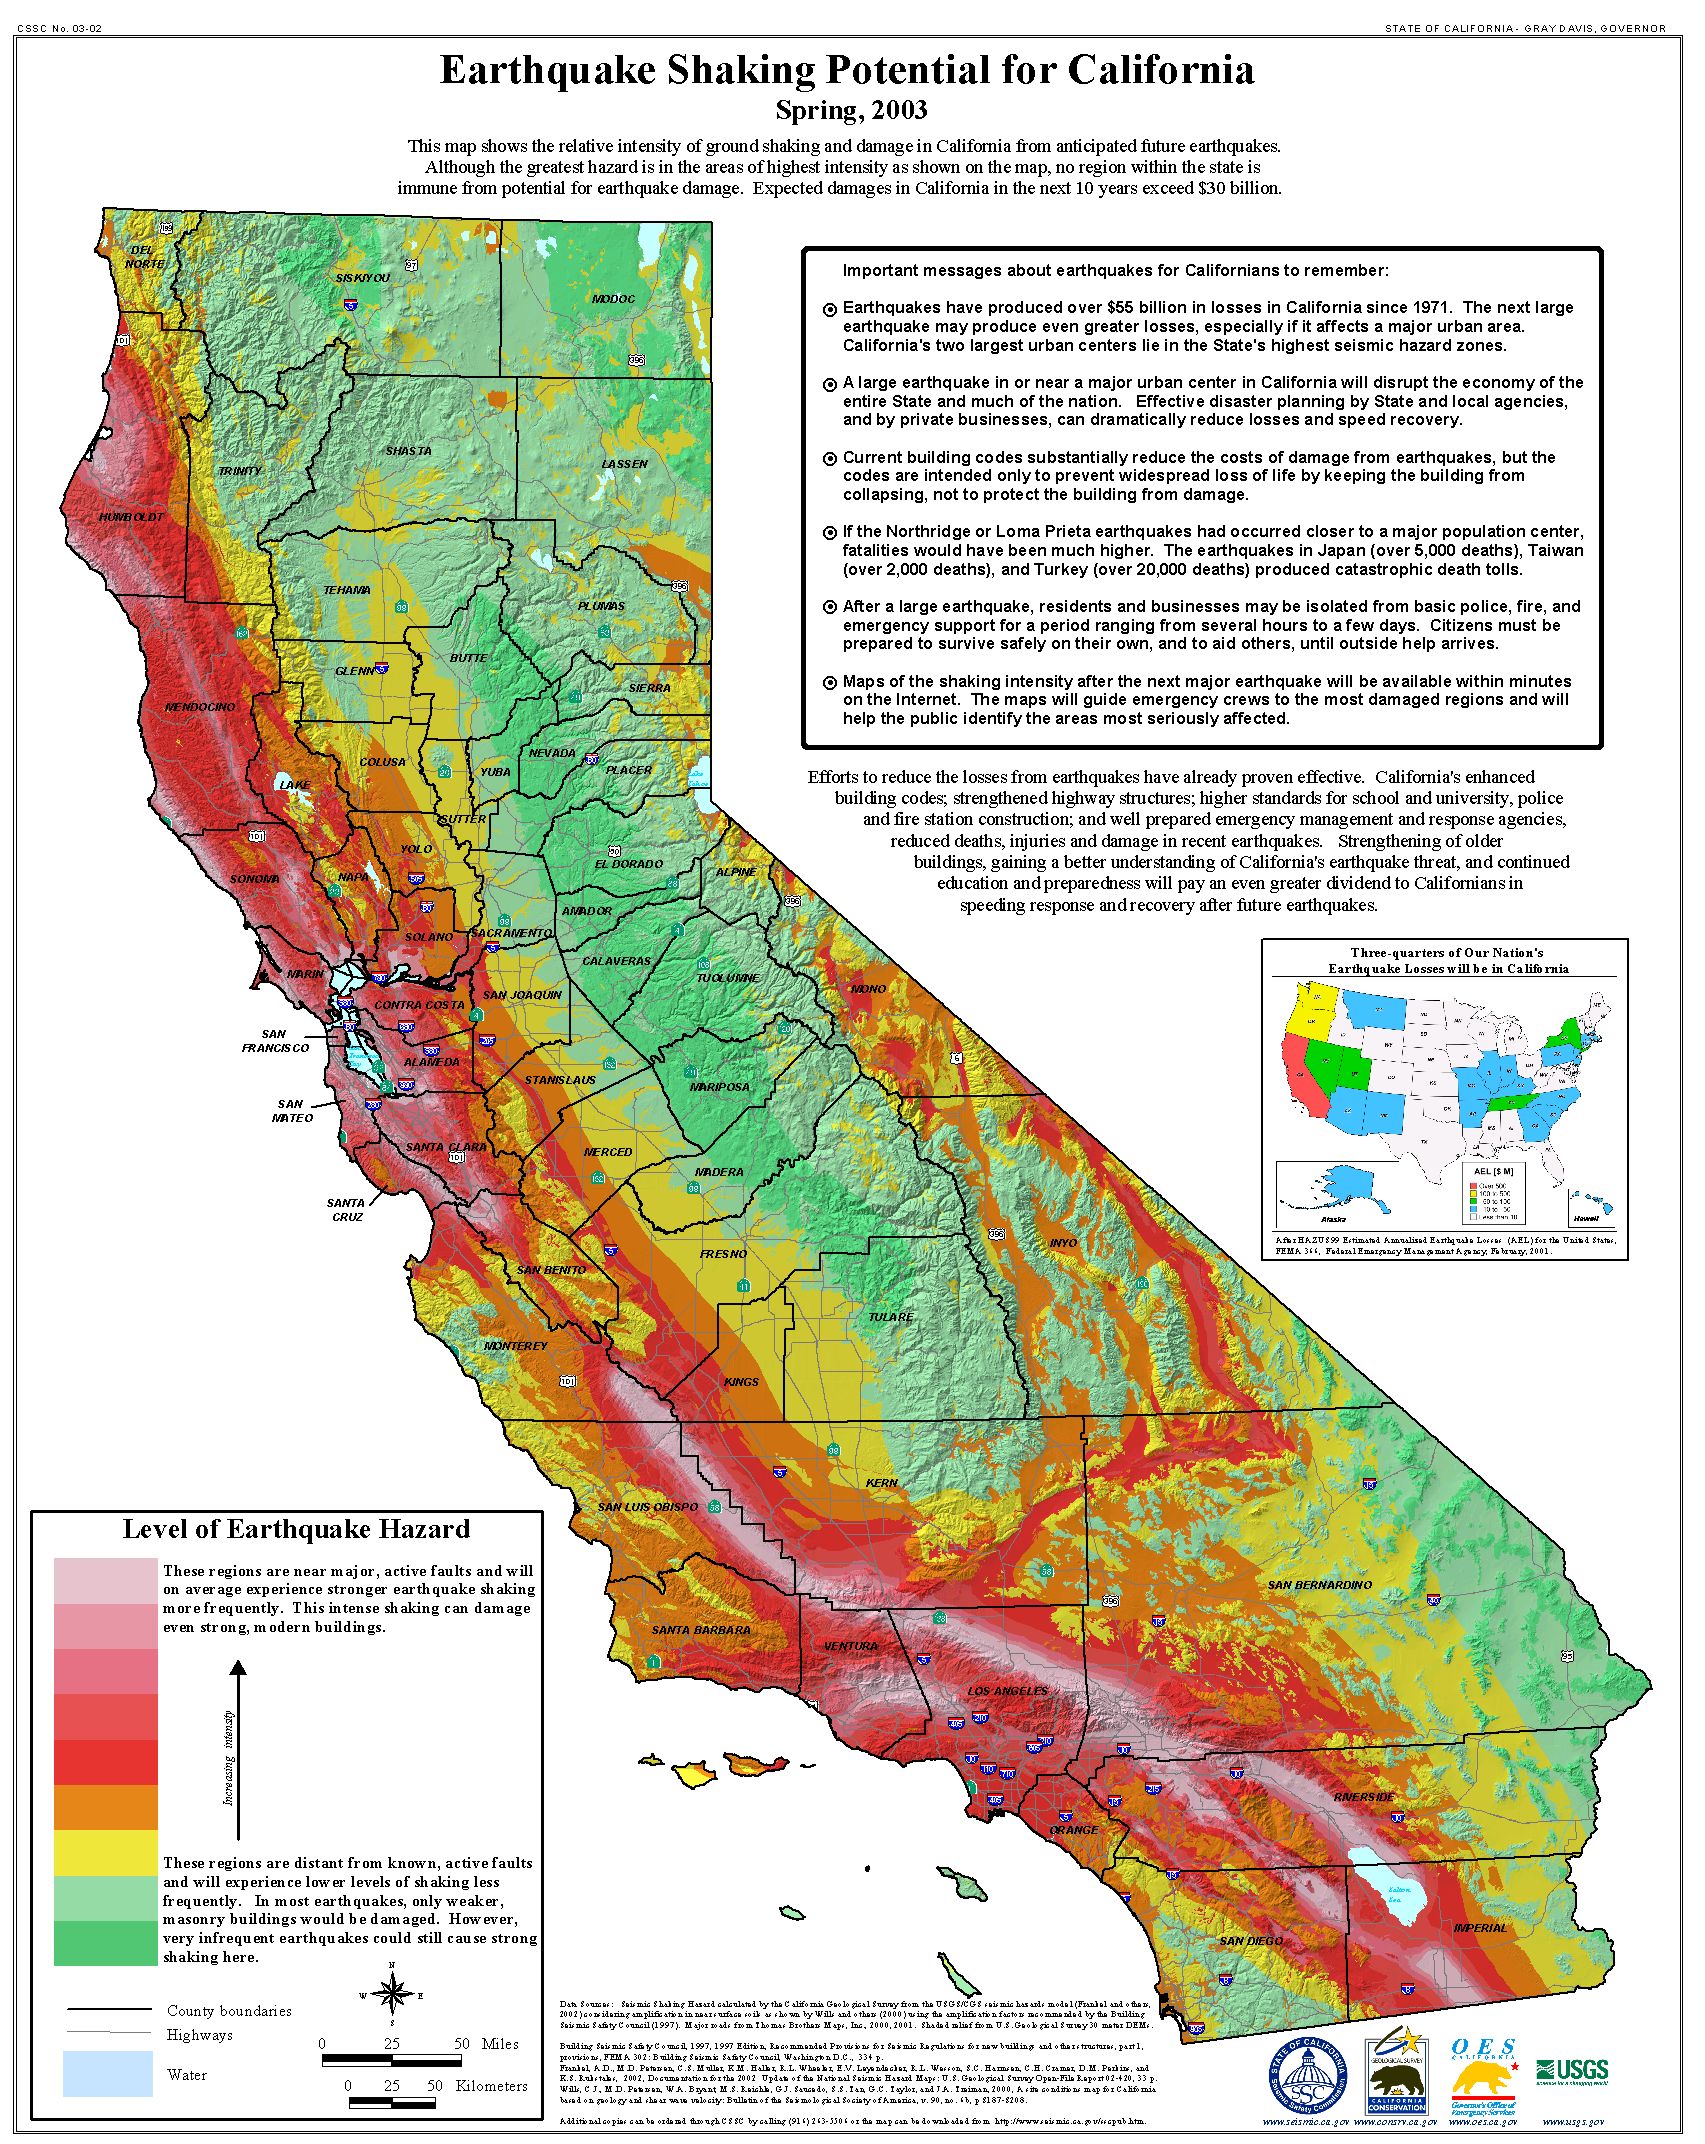 California Geological Survey - quake.ca.gov